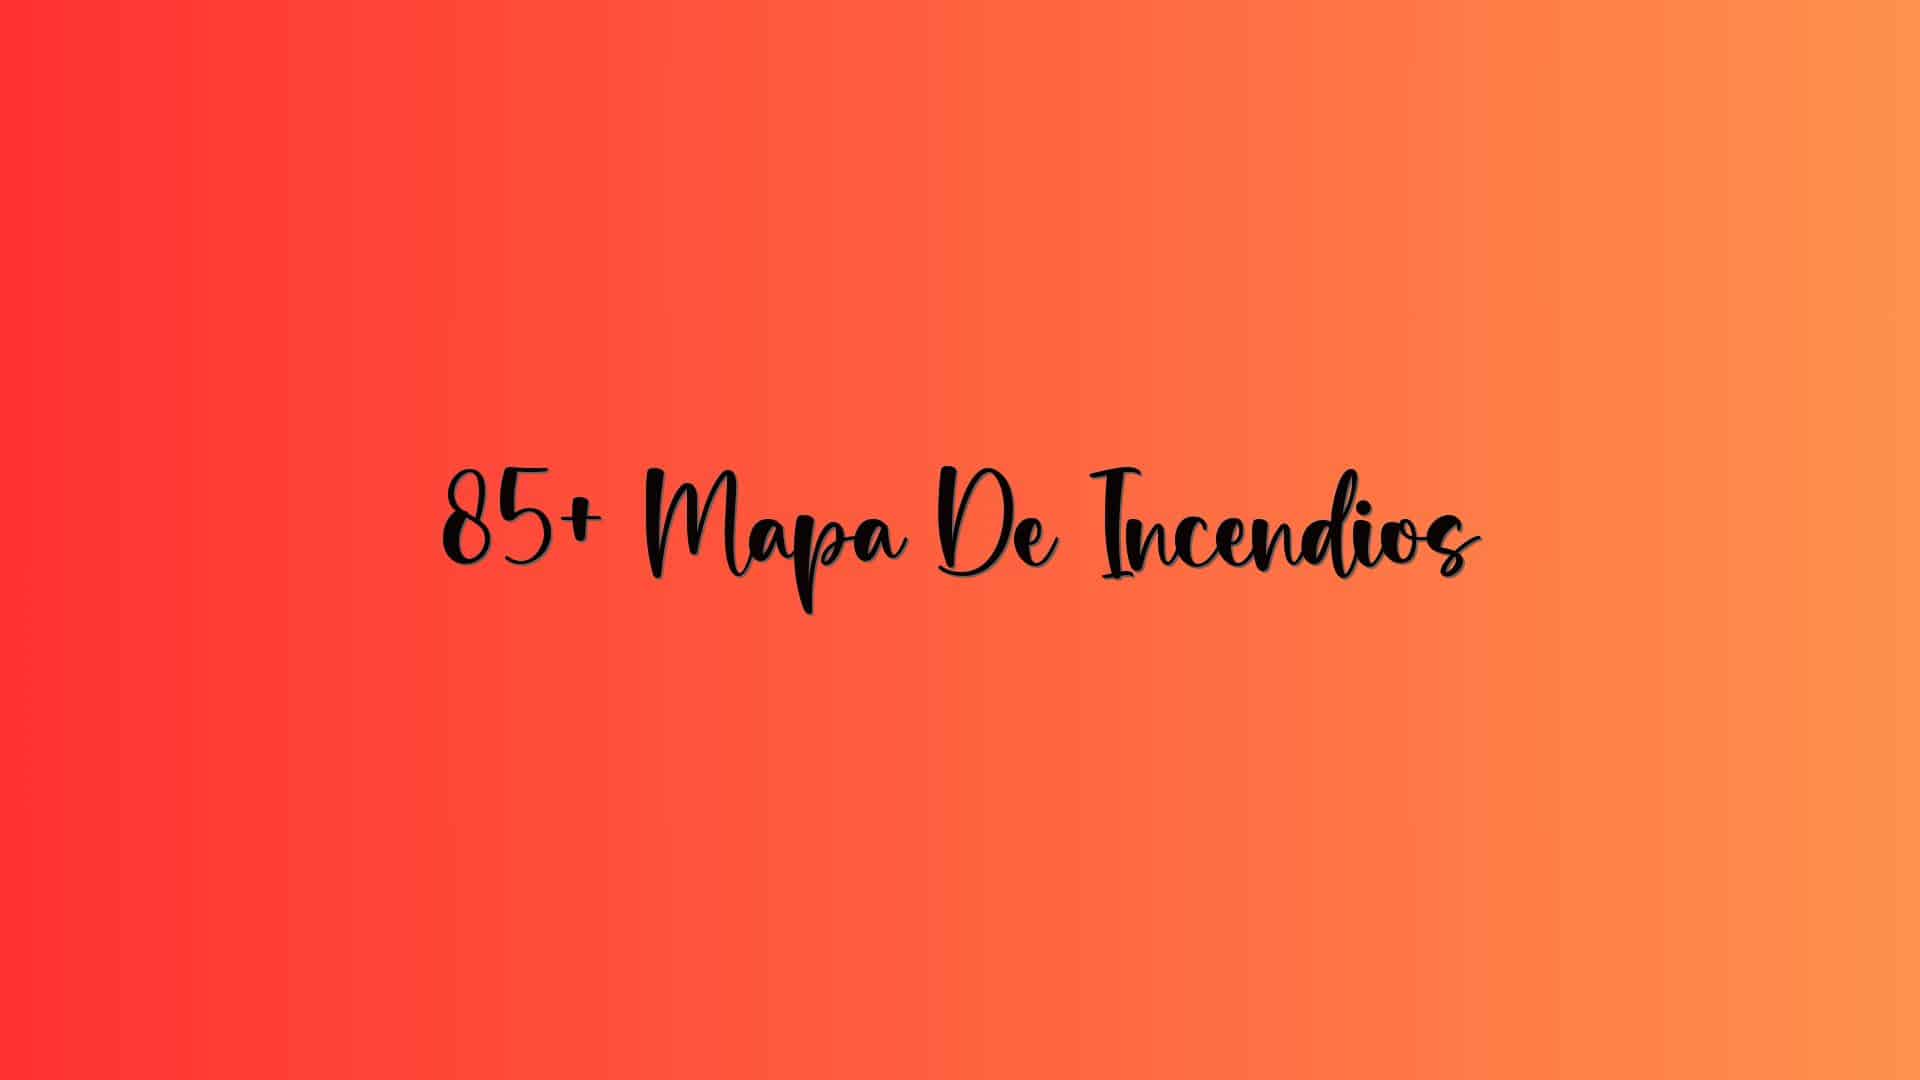 85+ Mapa De Incendios